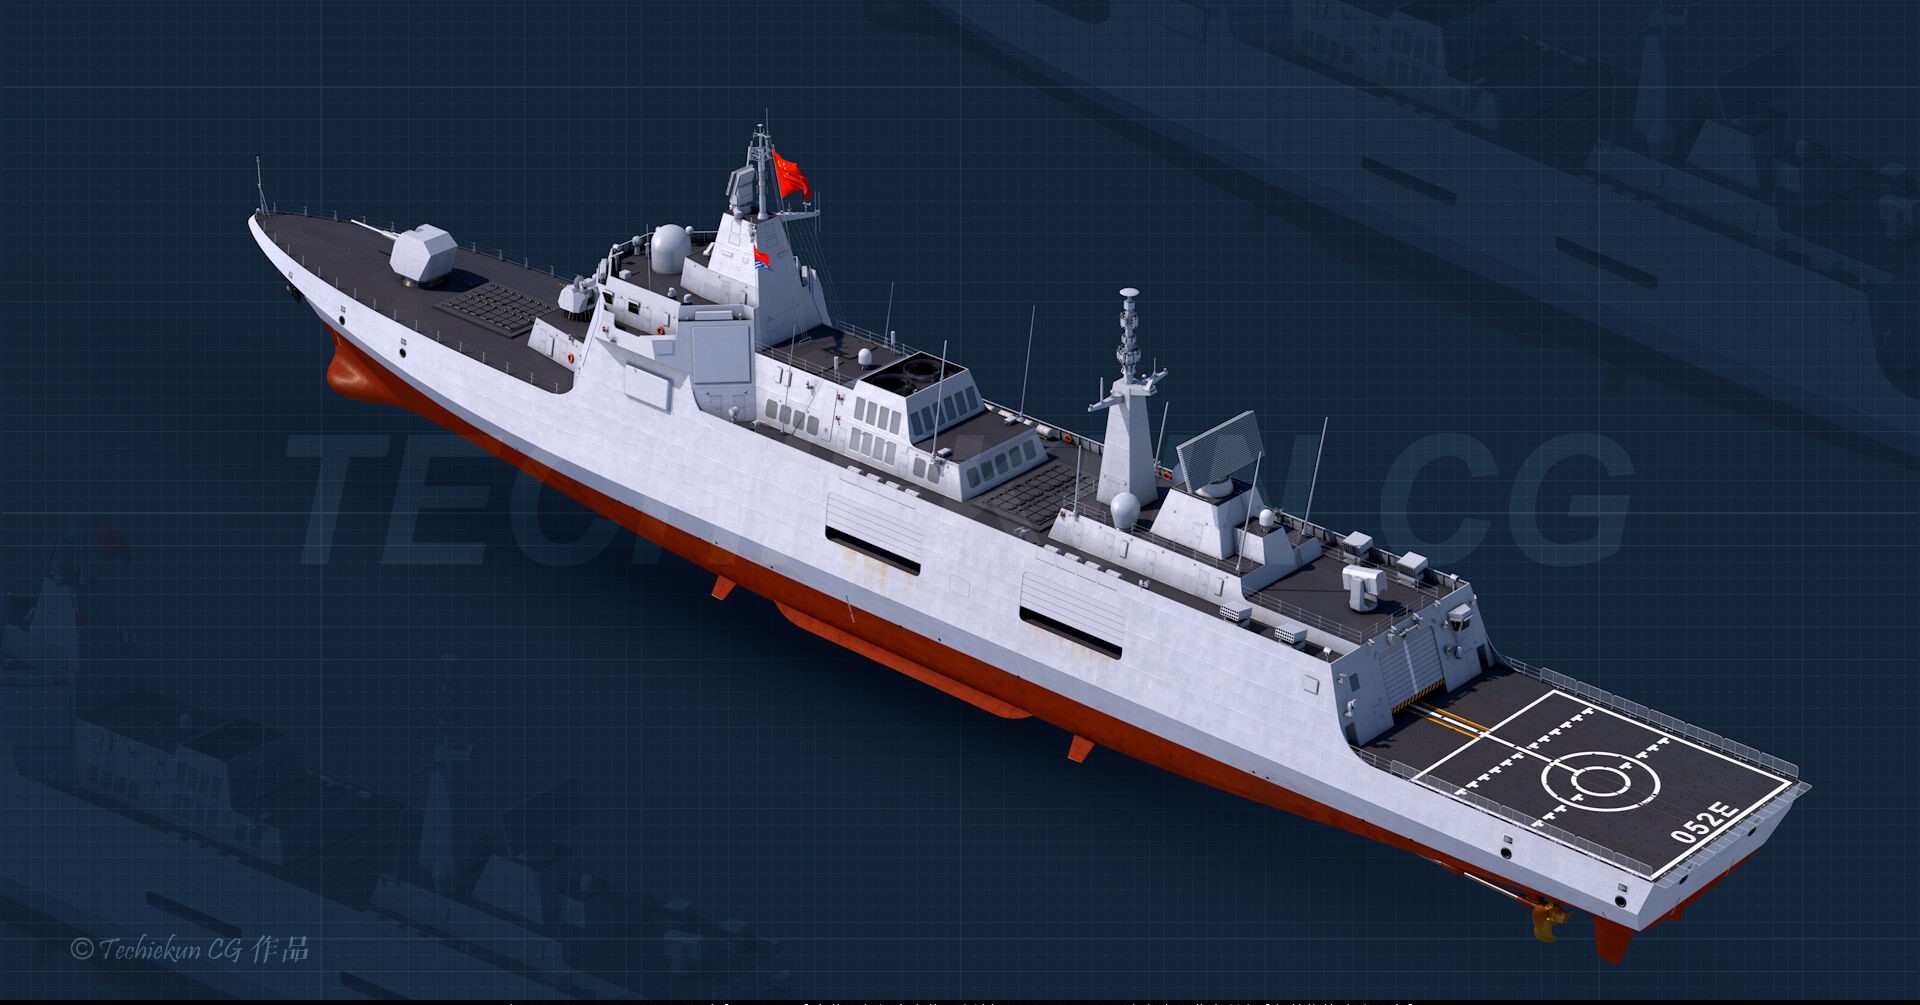 7000吨的052d优势不再明显,海军是否需要建造9000吨级驱逐舰?